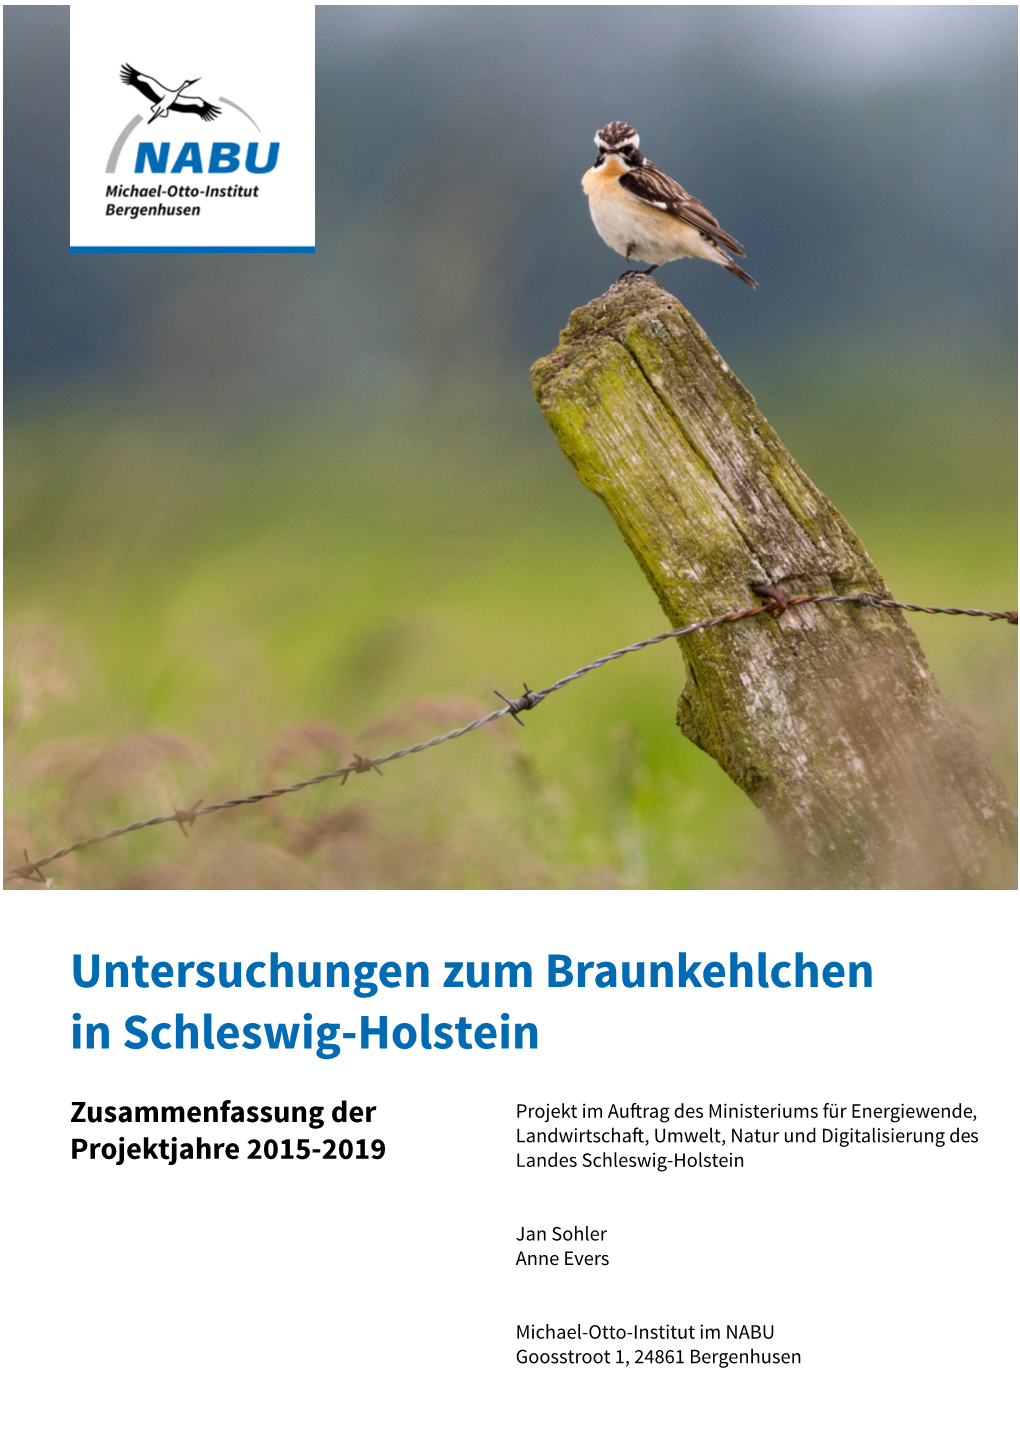 Untersuchungen Zum Braunkehlchen in Schleswig-Holstein – Zusammenfassung 2015-2019